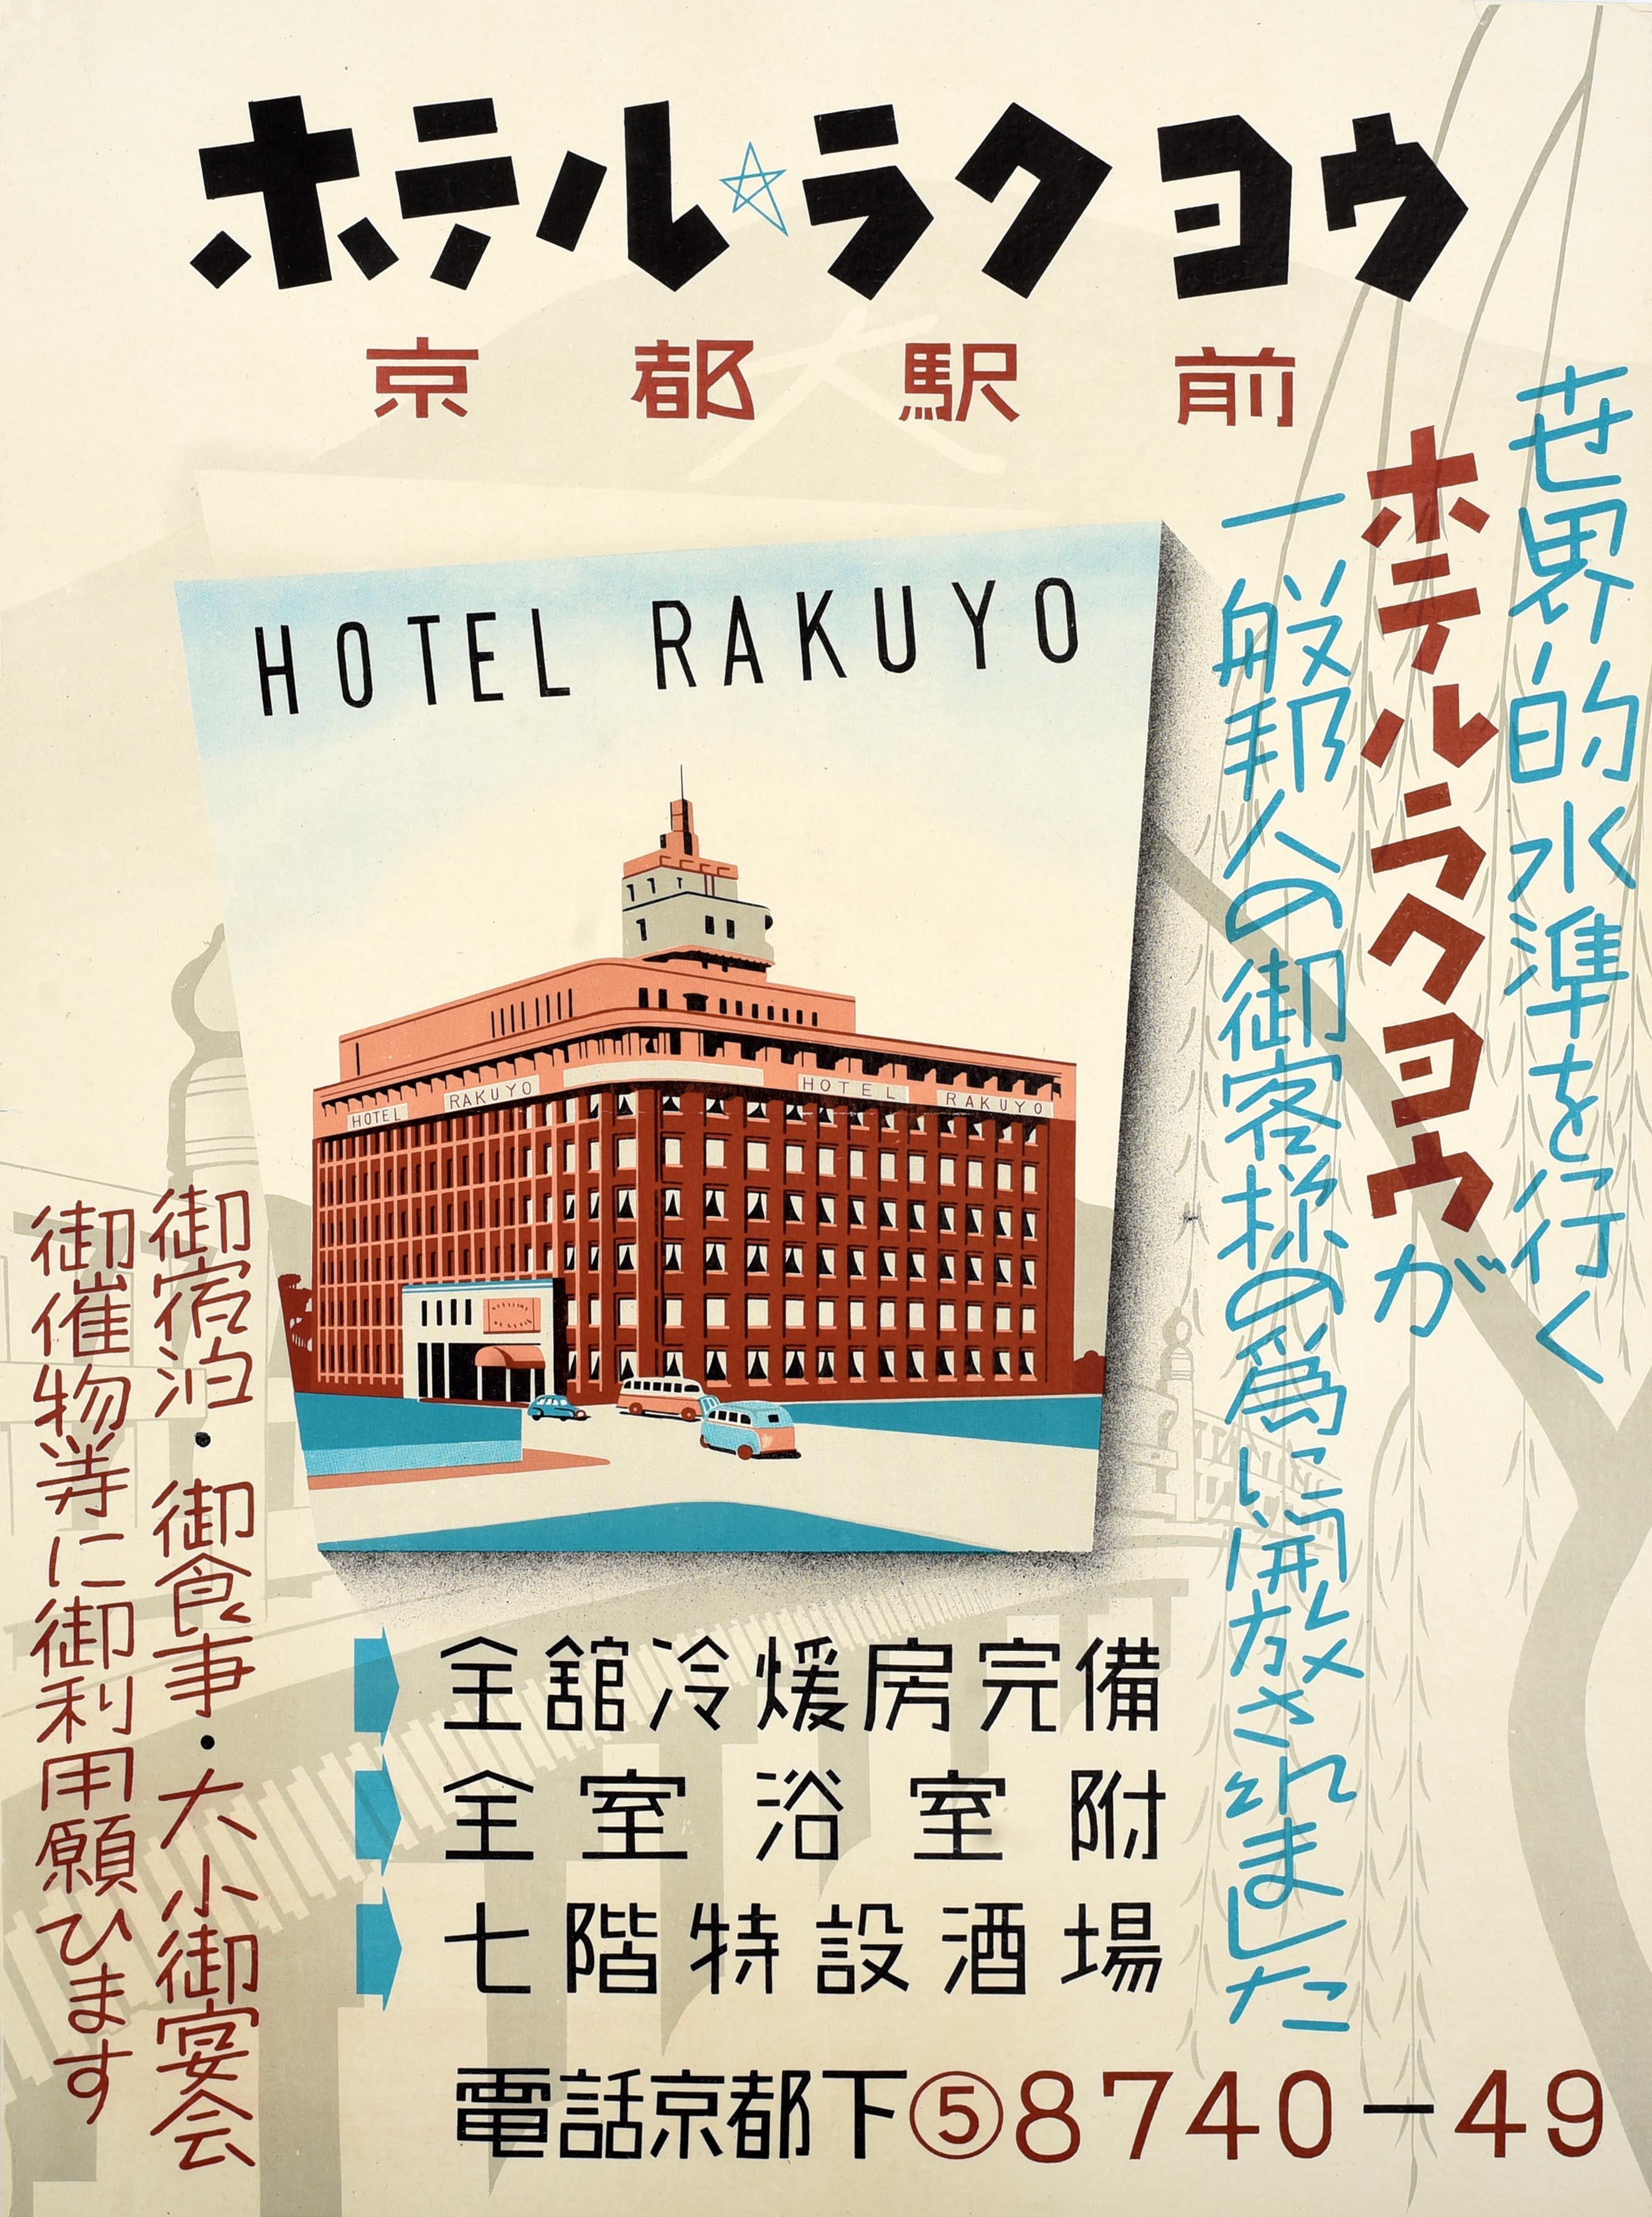 Print Unknown - Affiche de voyage japonaise originale de l'hôtel Rakuyo, gare de Kyoto, Japon, Asie